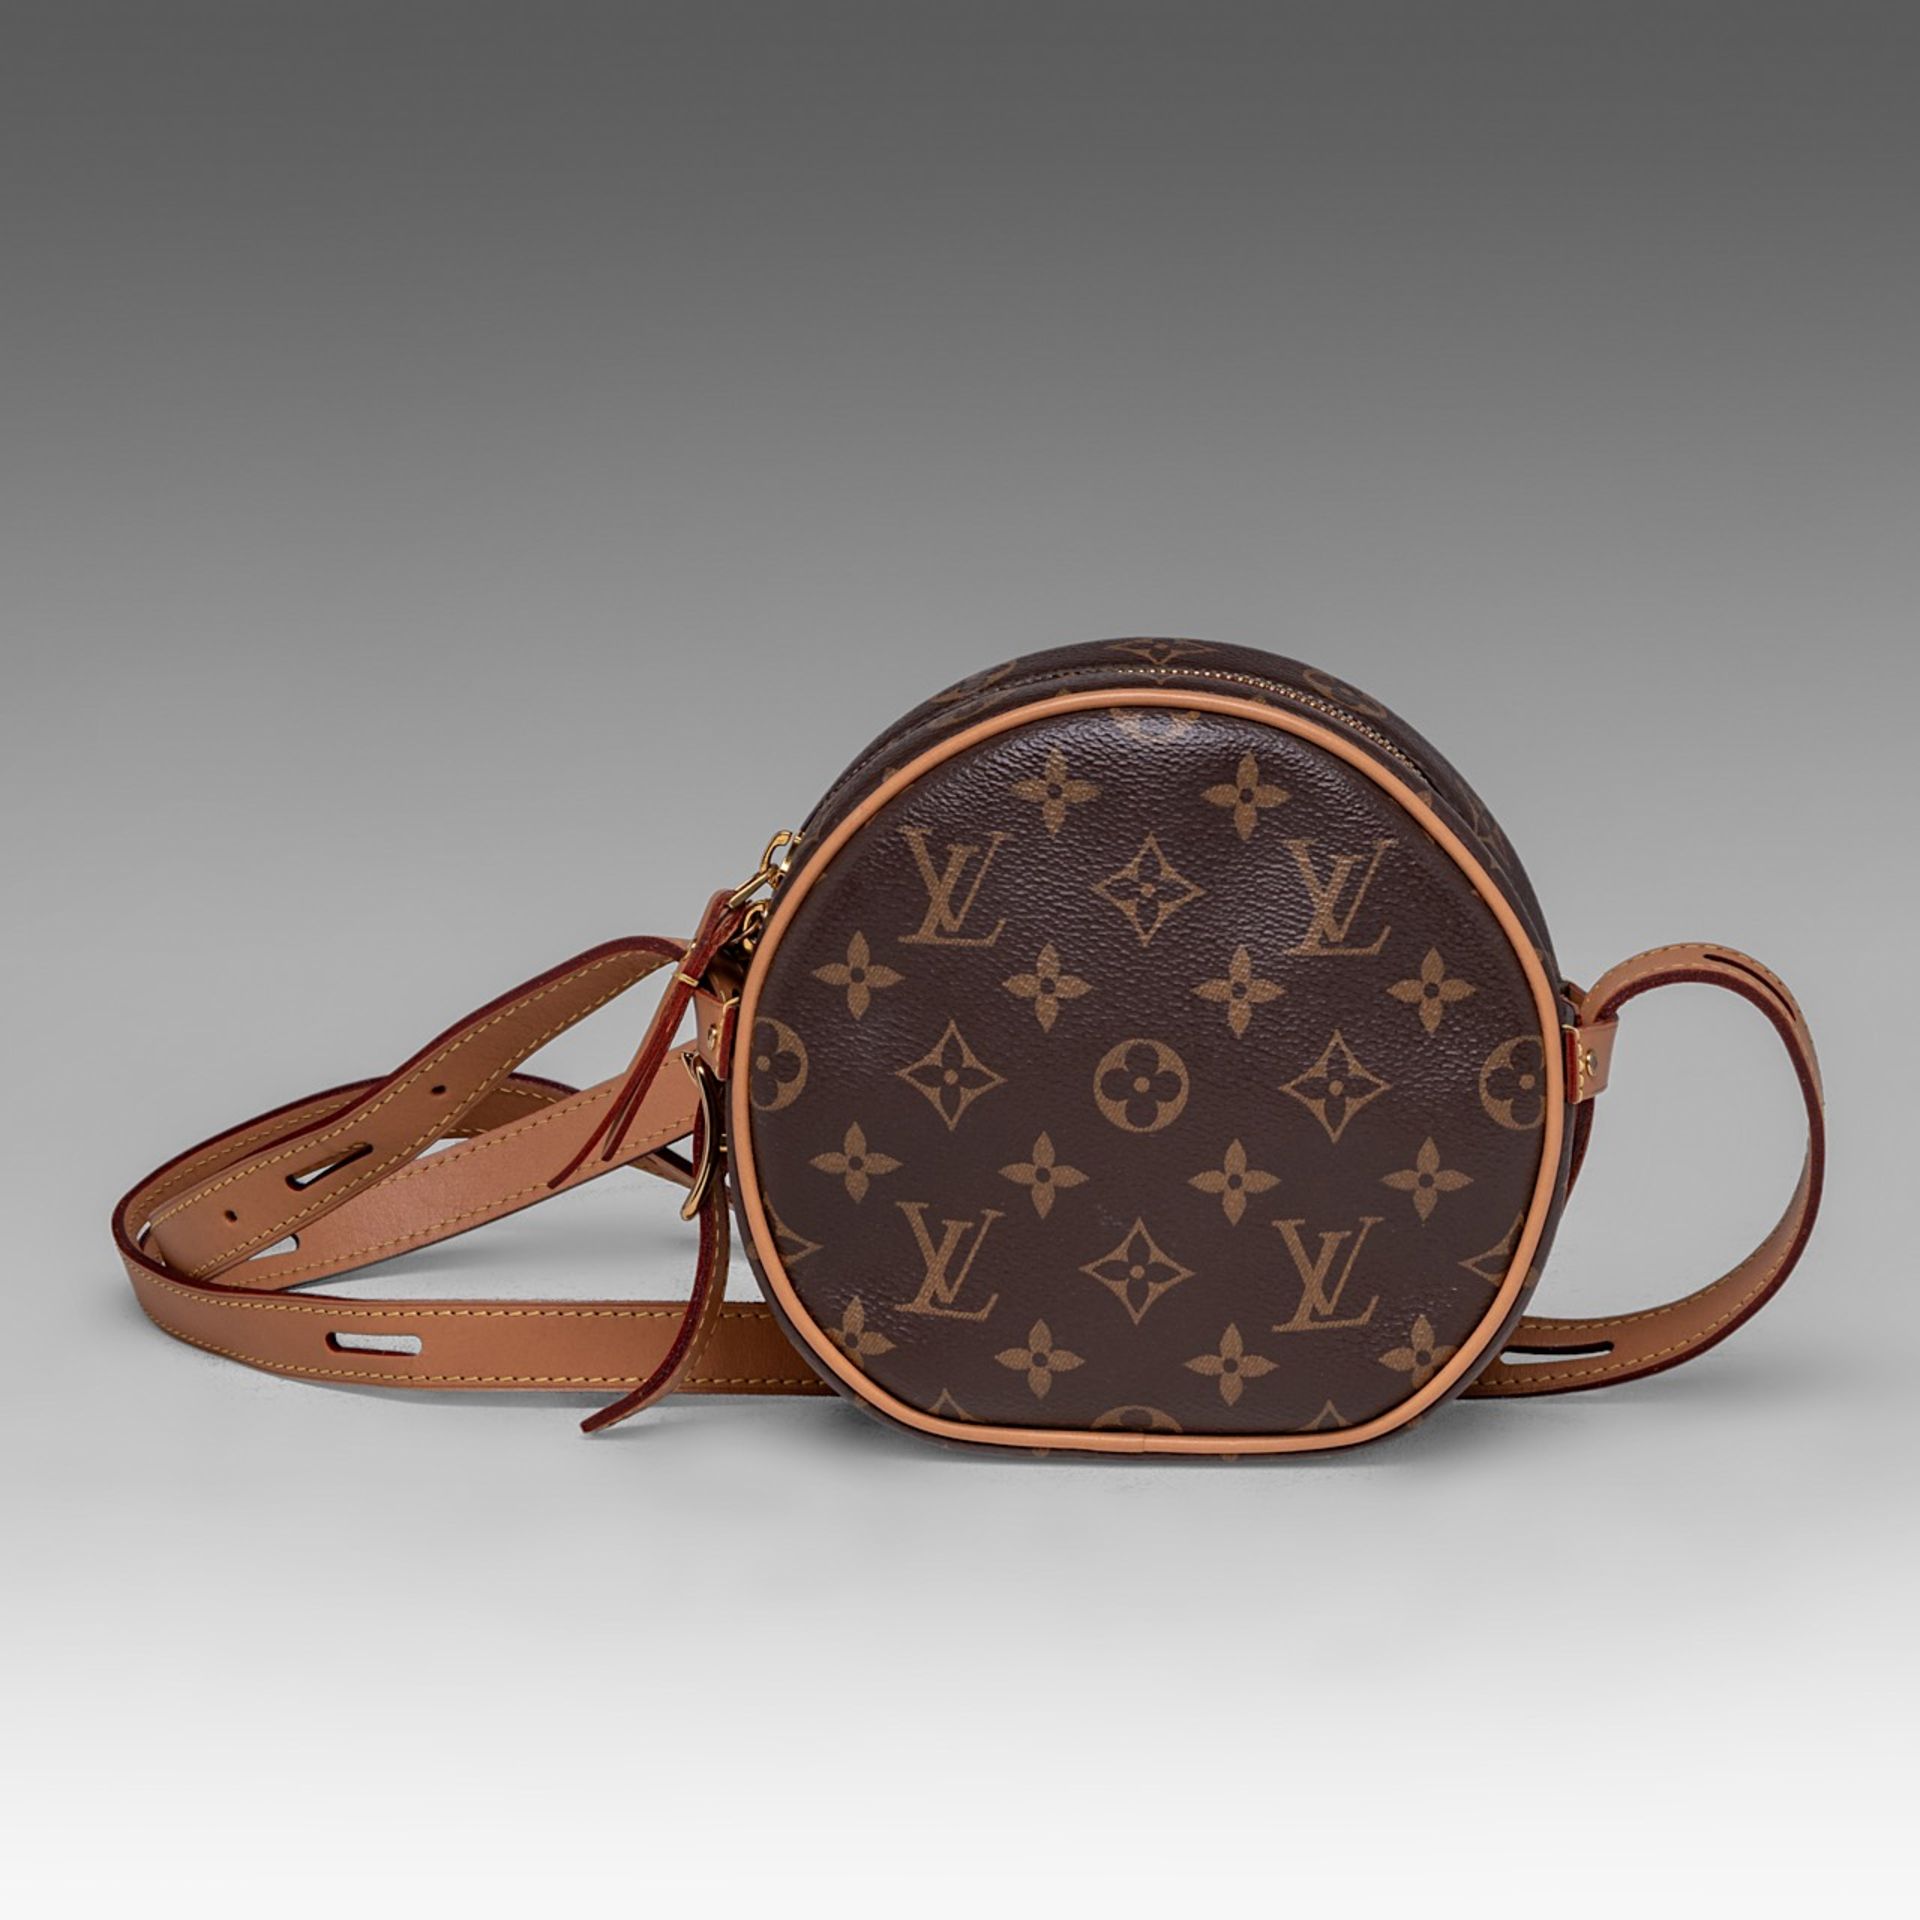 A Louis Vuitton monogram boite chapeau handbag, H 16 cm - Image 2 of 9